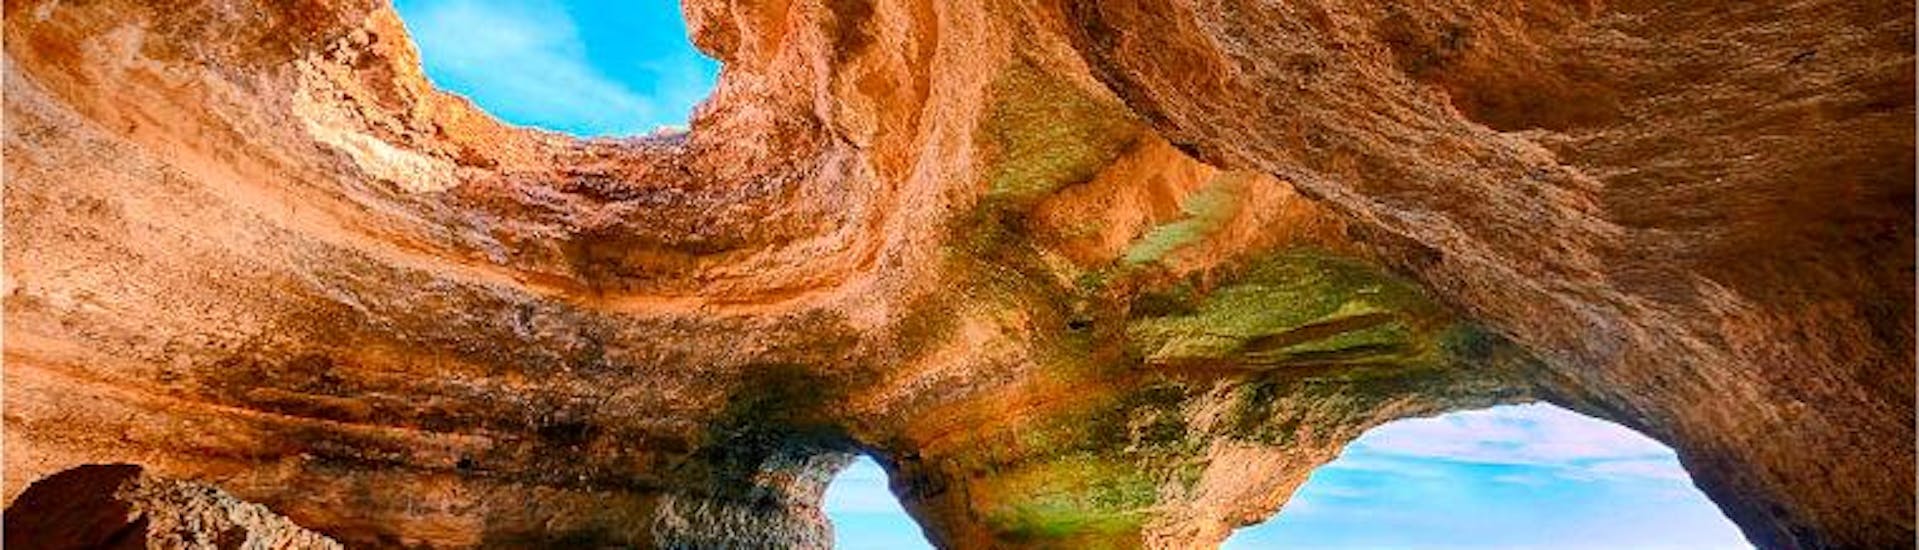 La grotte de Benagil lors d'une excursion en bateau dans les grottes de Benagil avec Algarve Discovery.